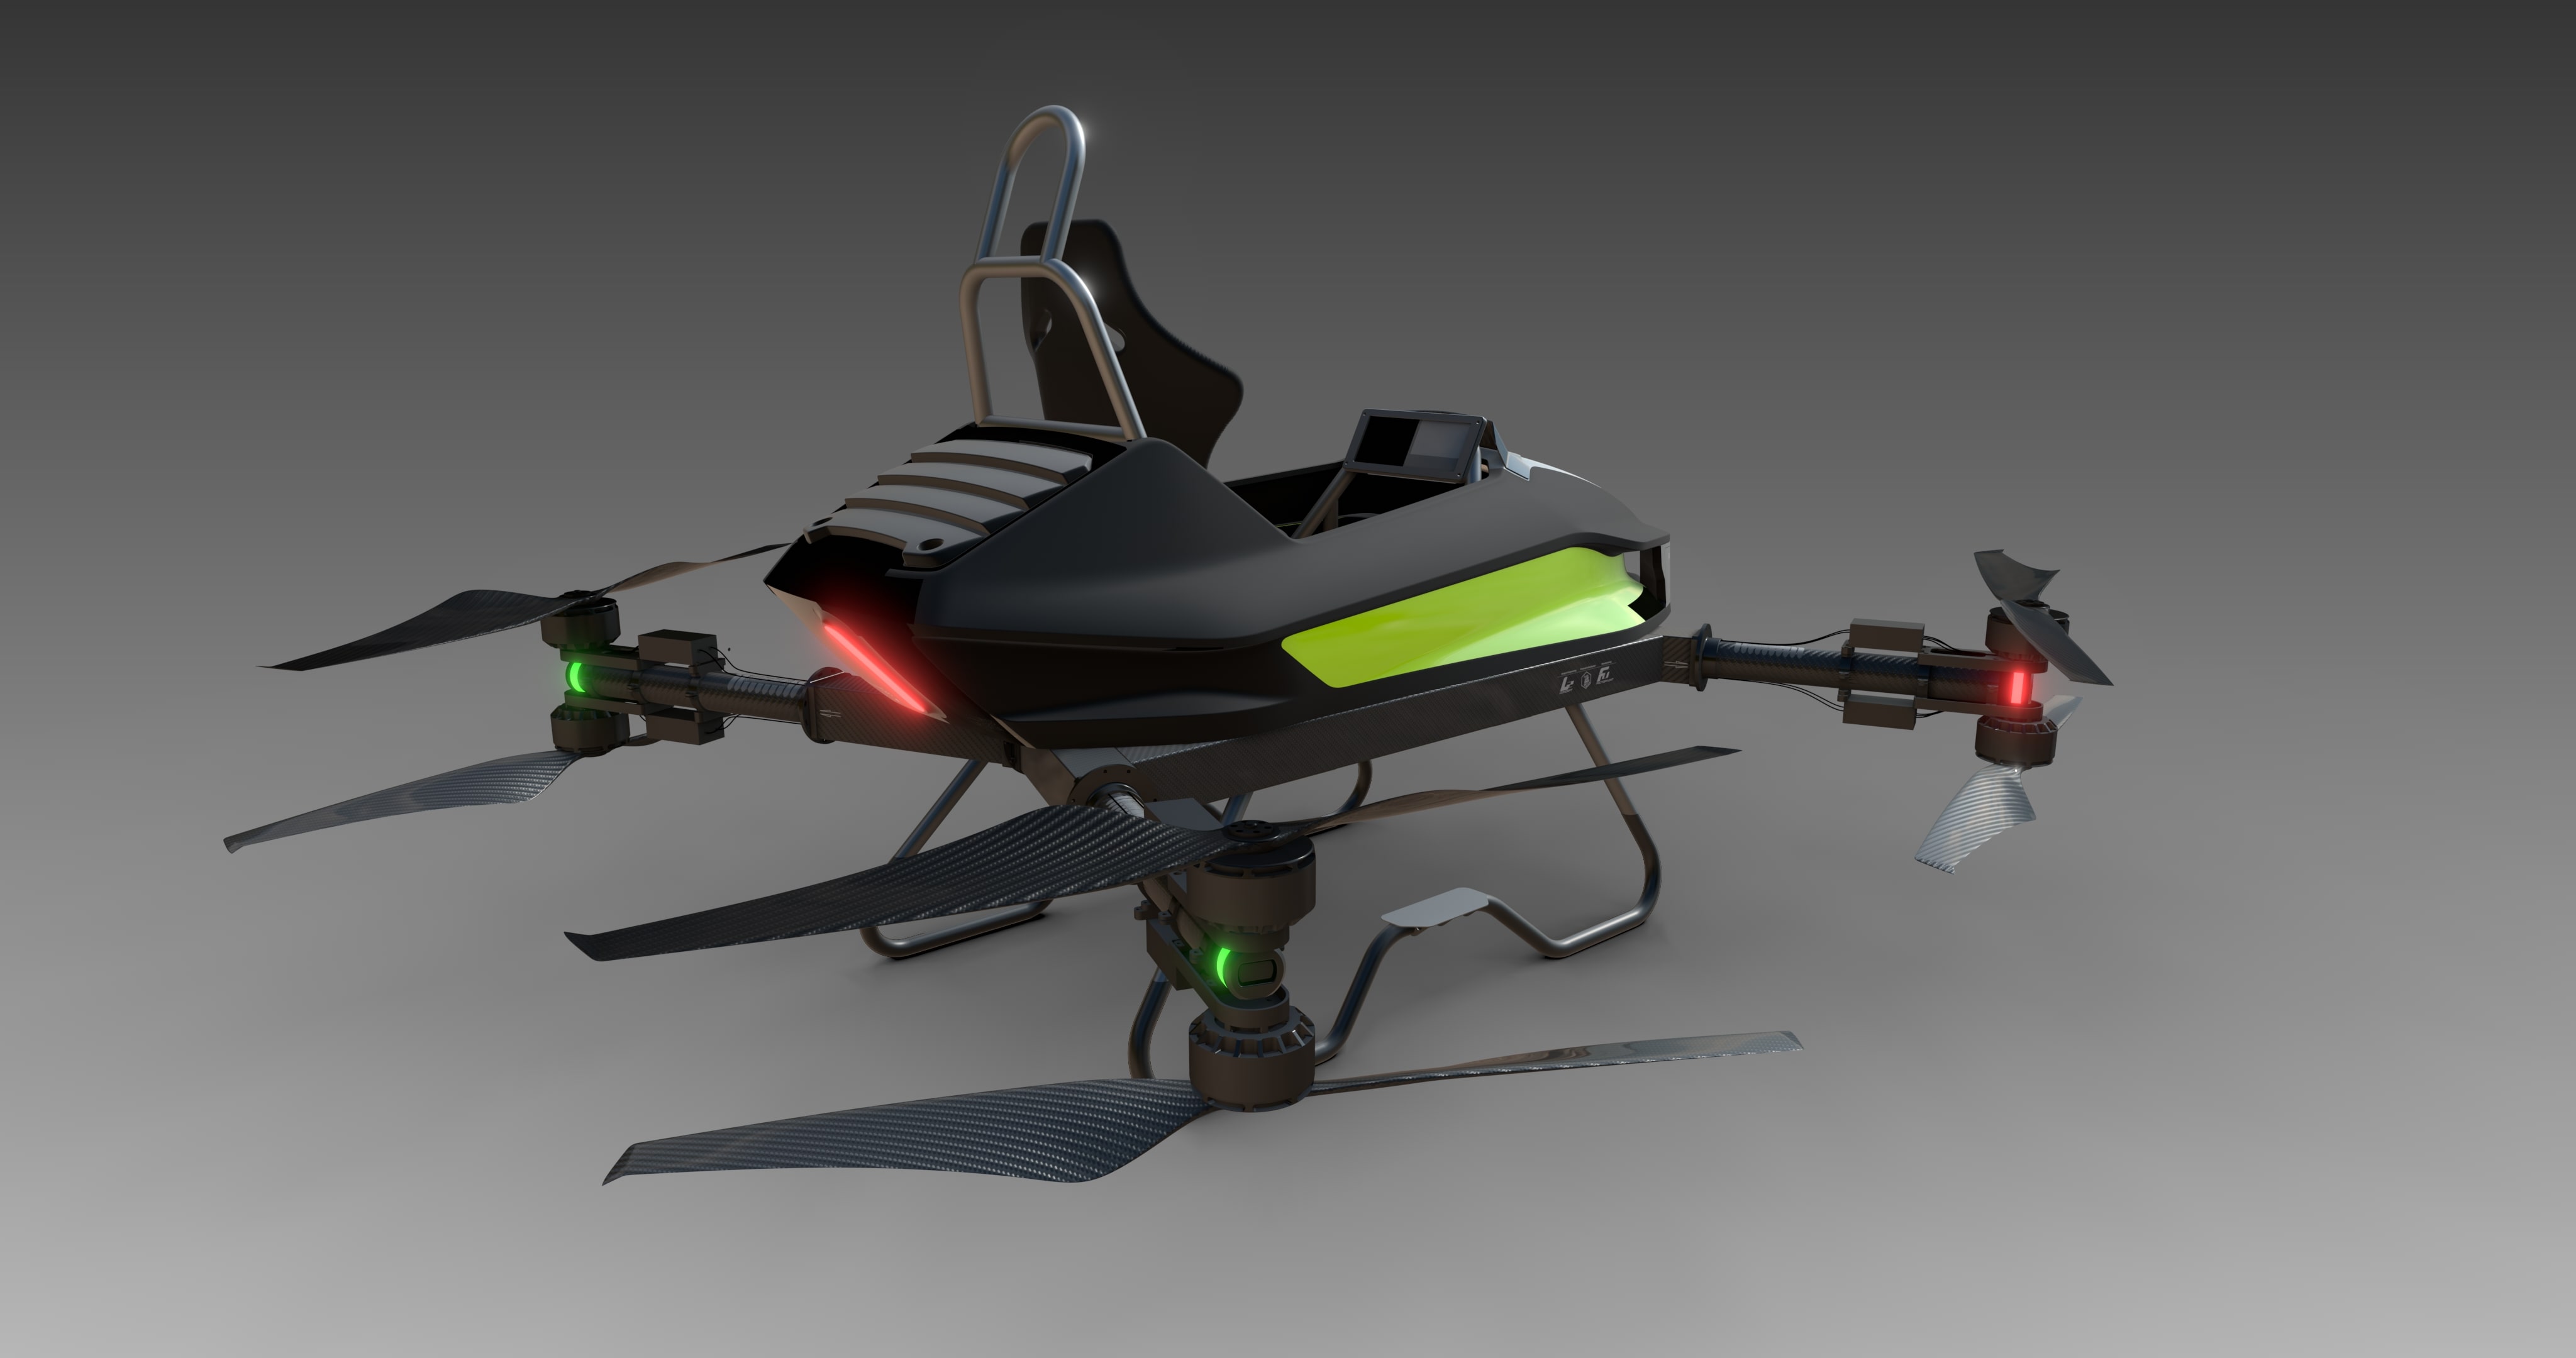 Das Hightech-Transportgerät ist ein einfacher, aber futuristisch anmutender Koaxial-Oktakopter